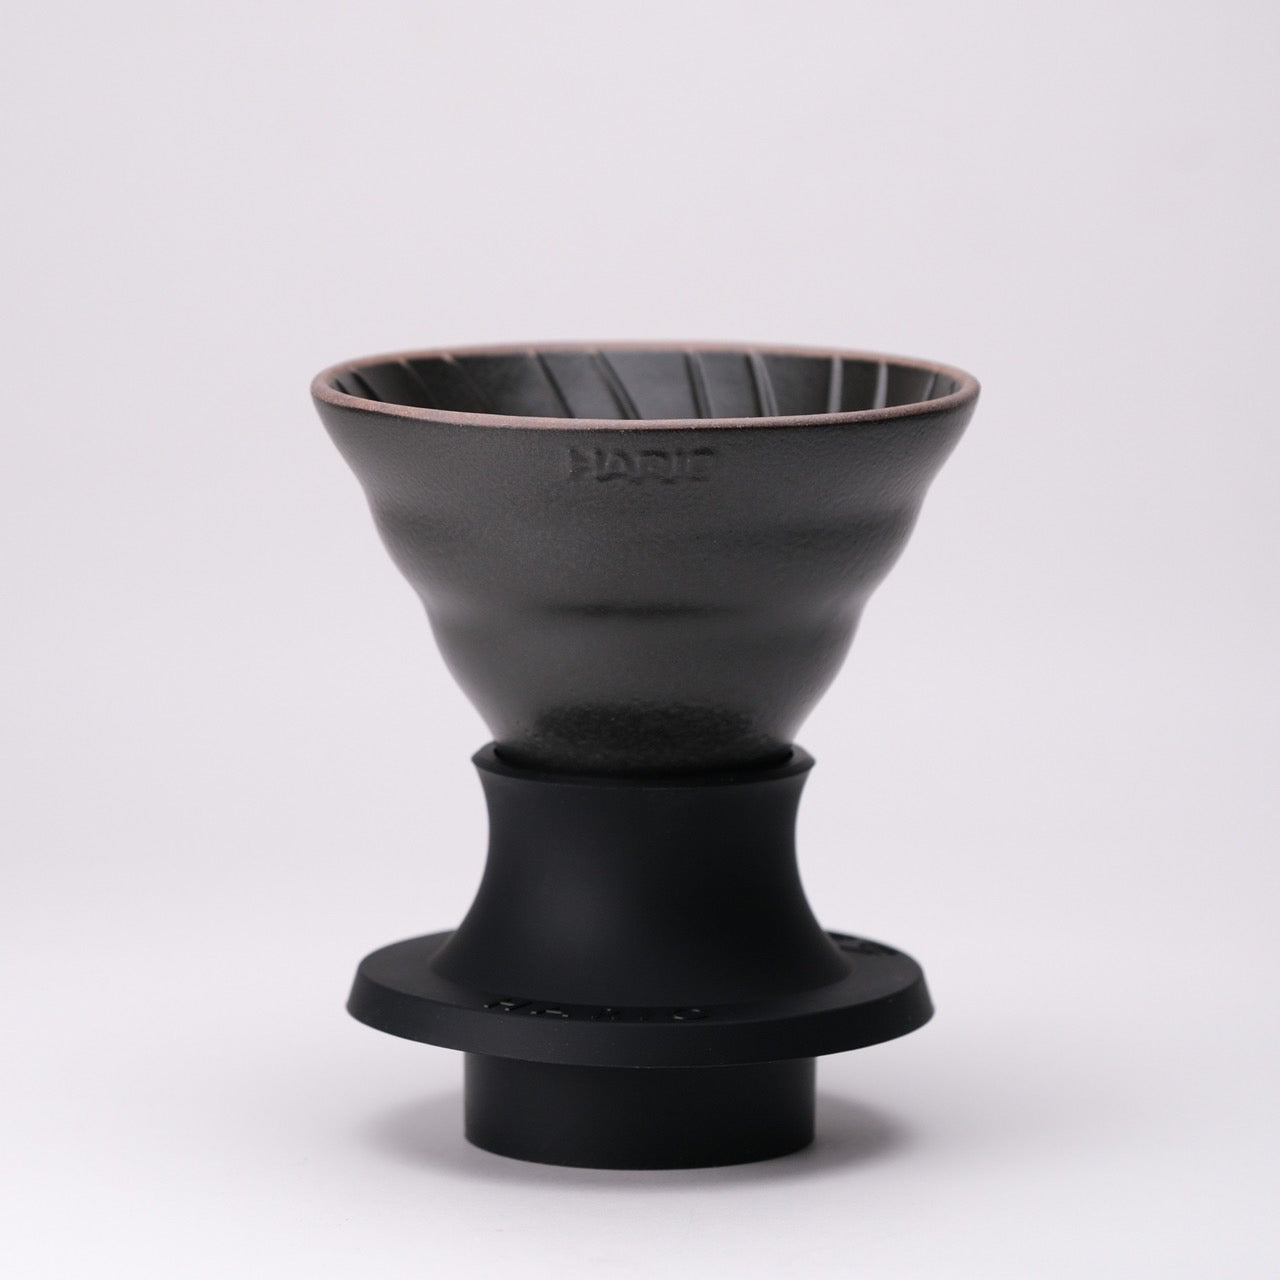 HARIO x Lin's Ceramics Studio Swtich Immersion Coffee Dripper Volcano Black 1